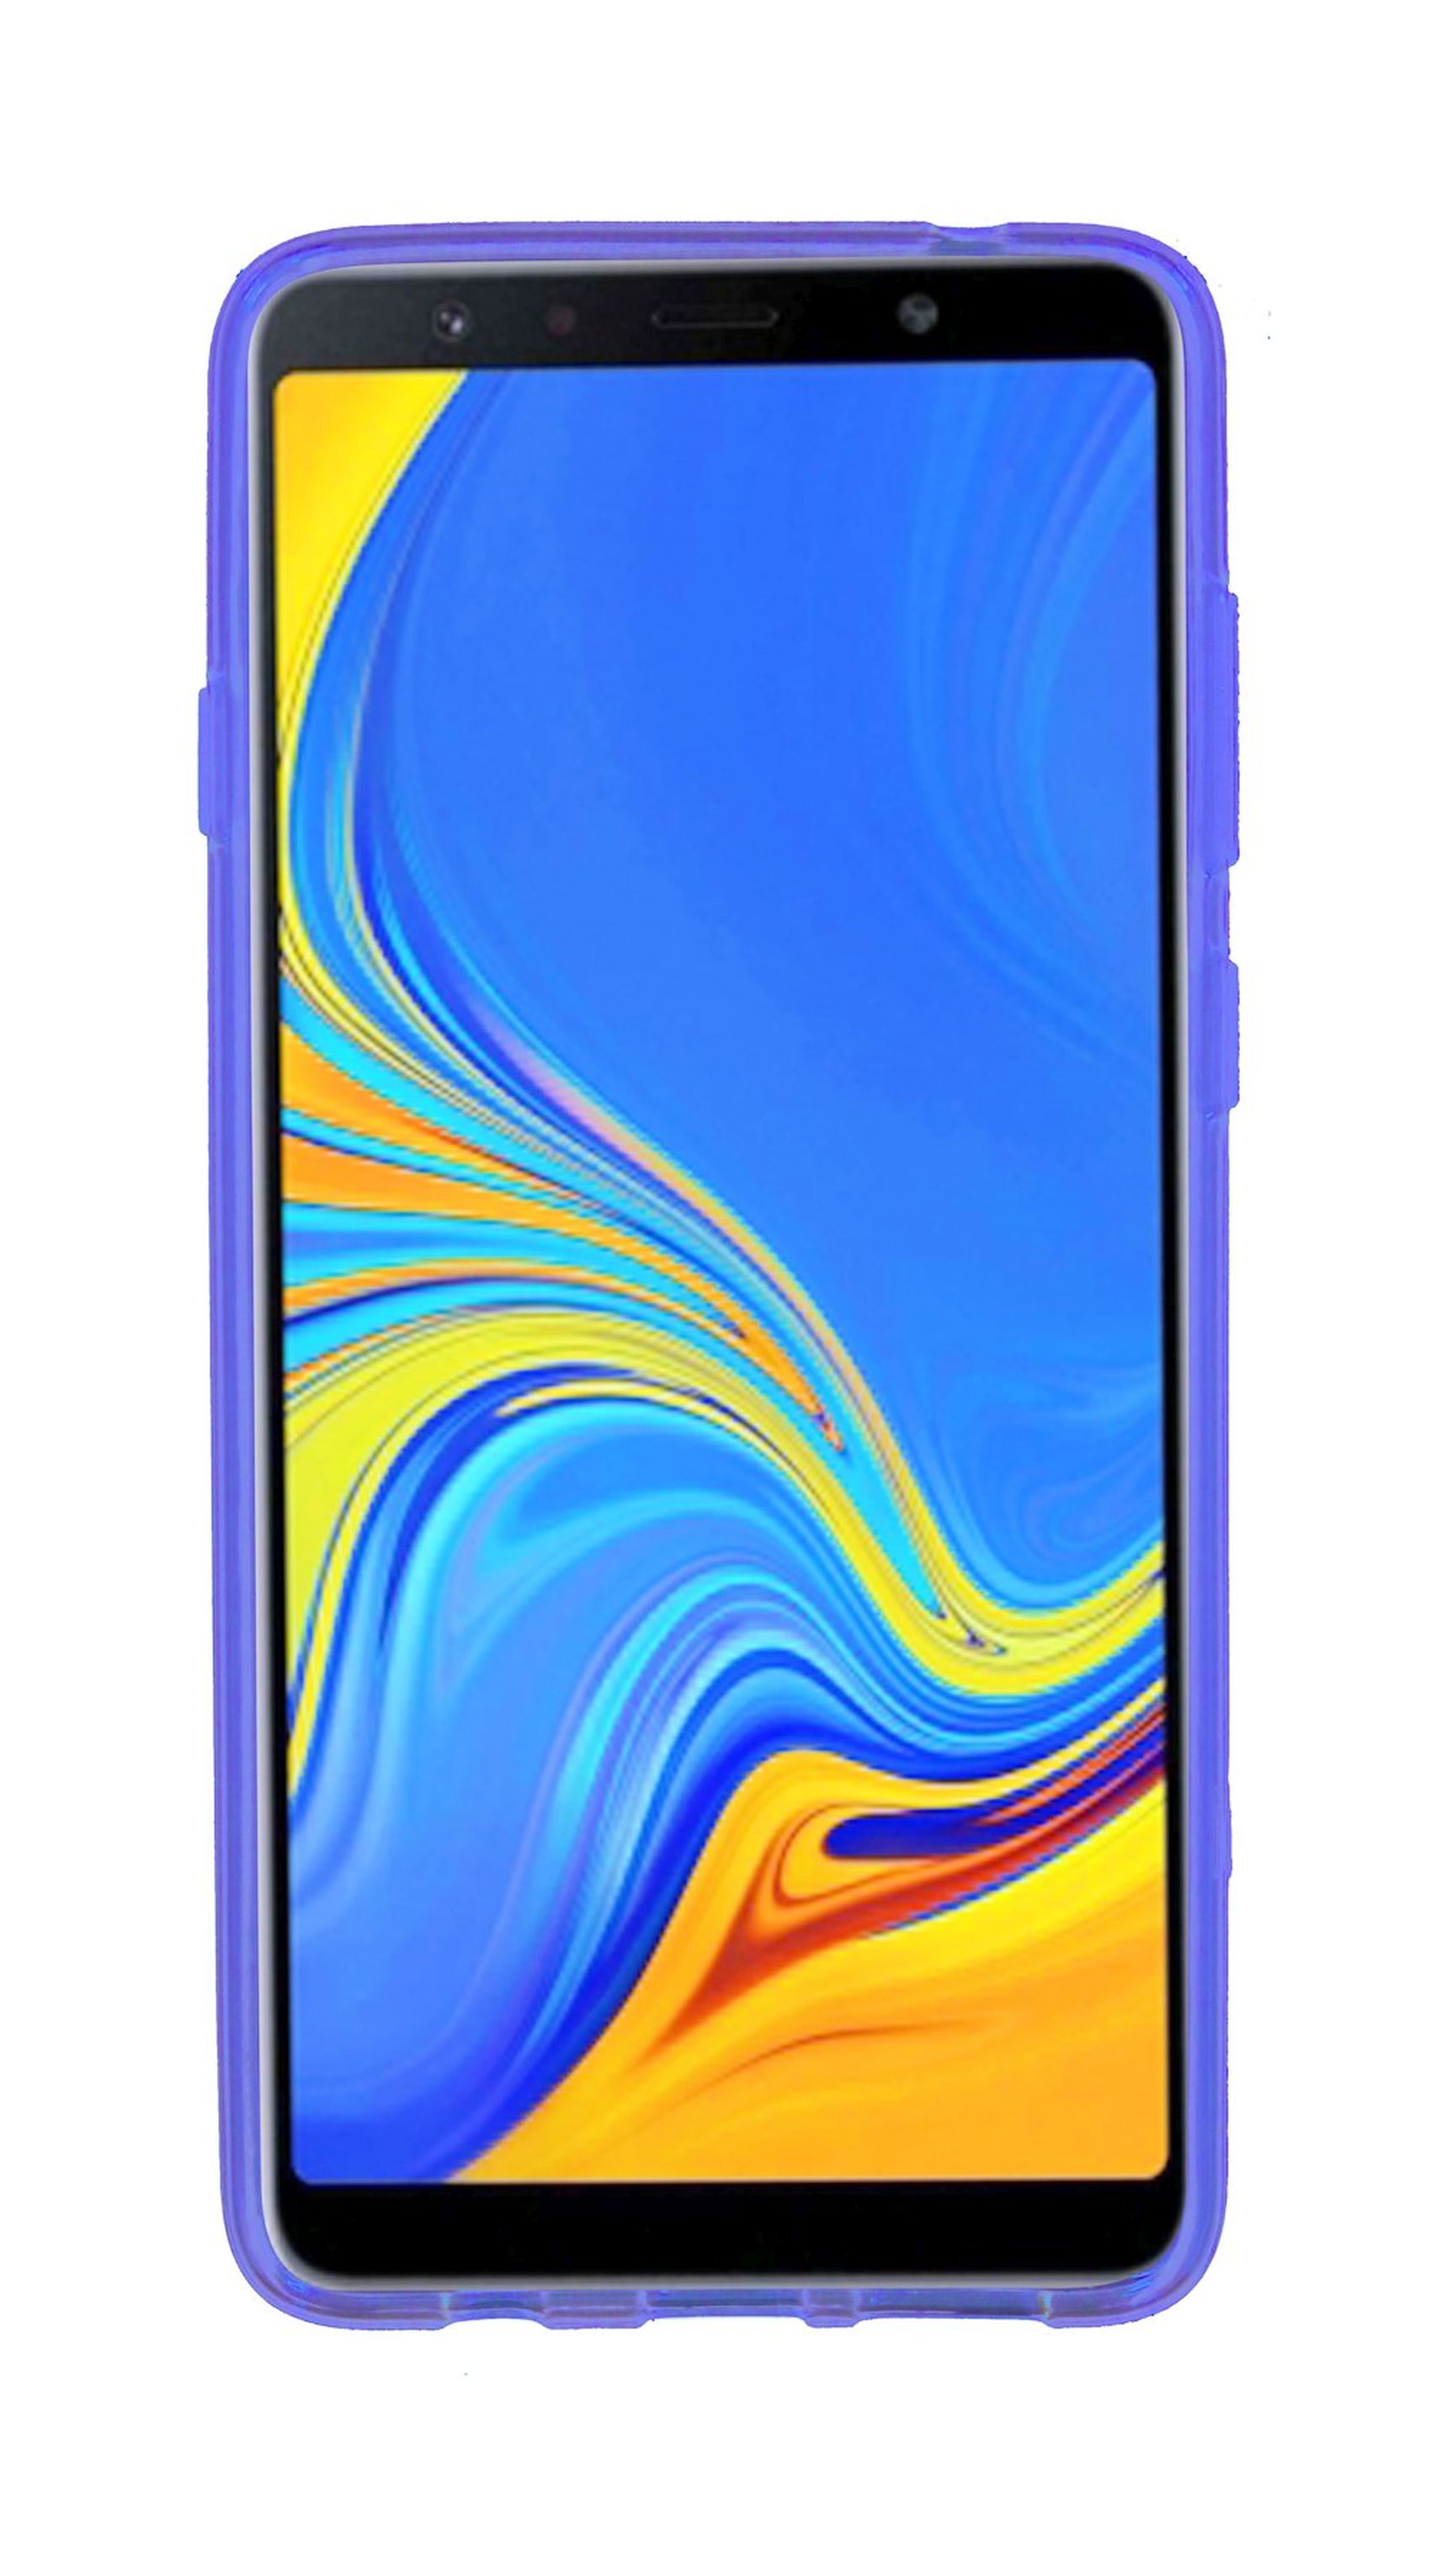 Cover, S-Line Bumper, COFI Galaxy 2018, A7 Samsung, Violett